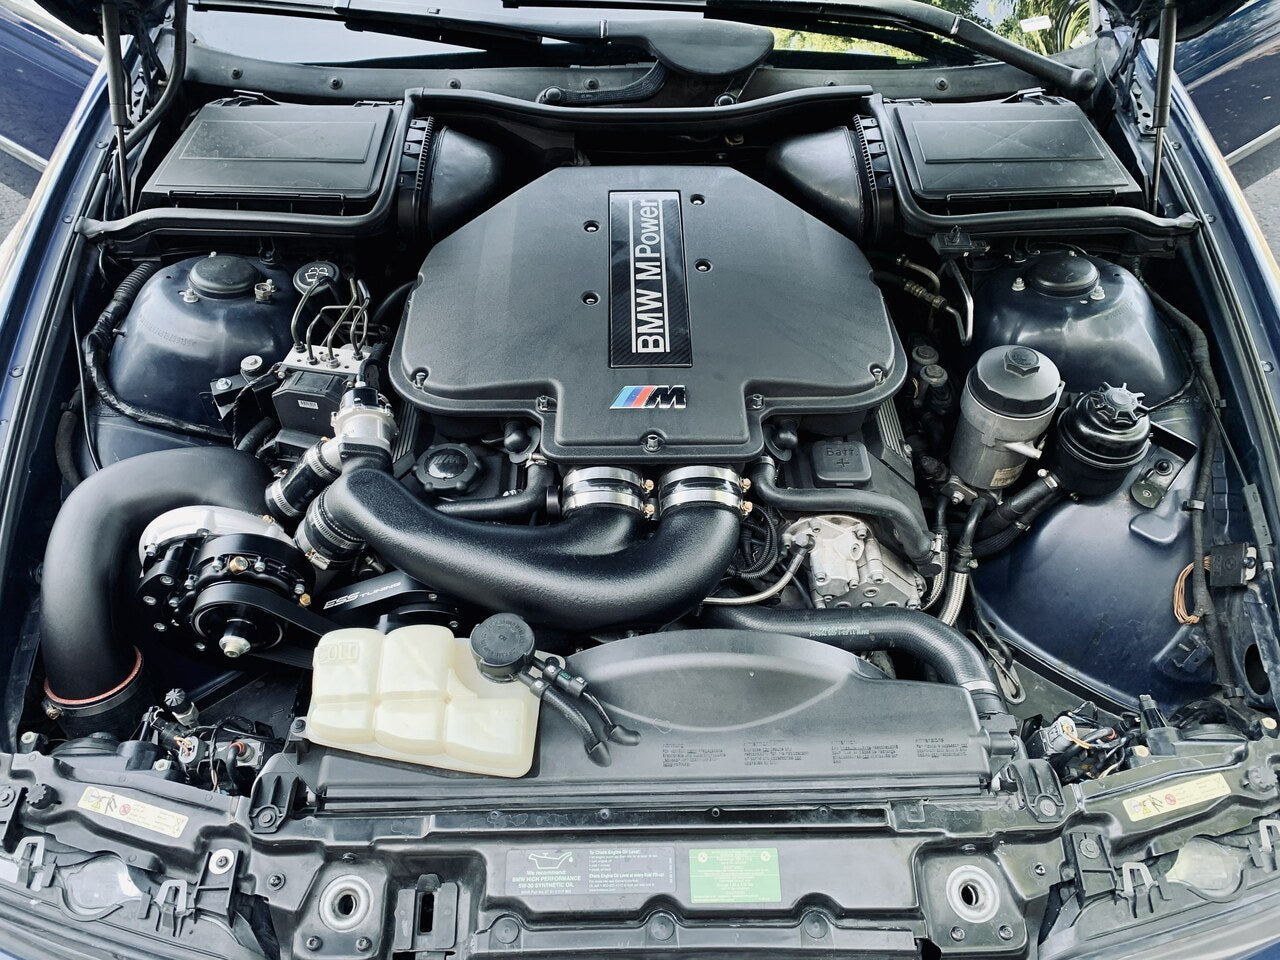 ESS Tuning - Sistema de Supercharger BMW E39 M5 G1 (ESS-S62G1)